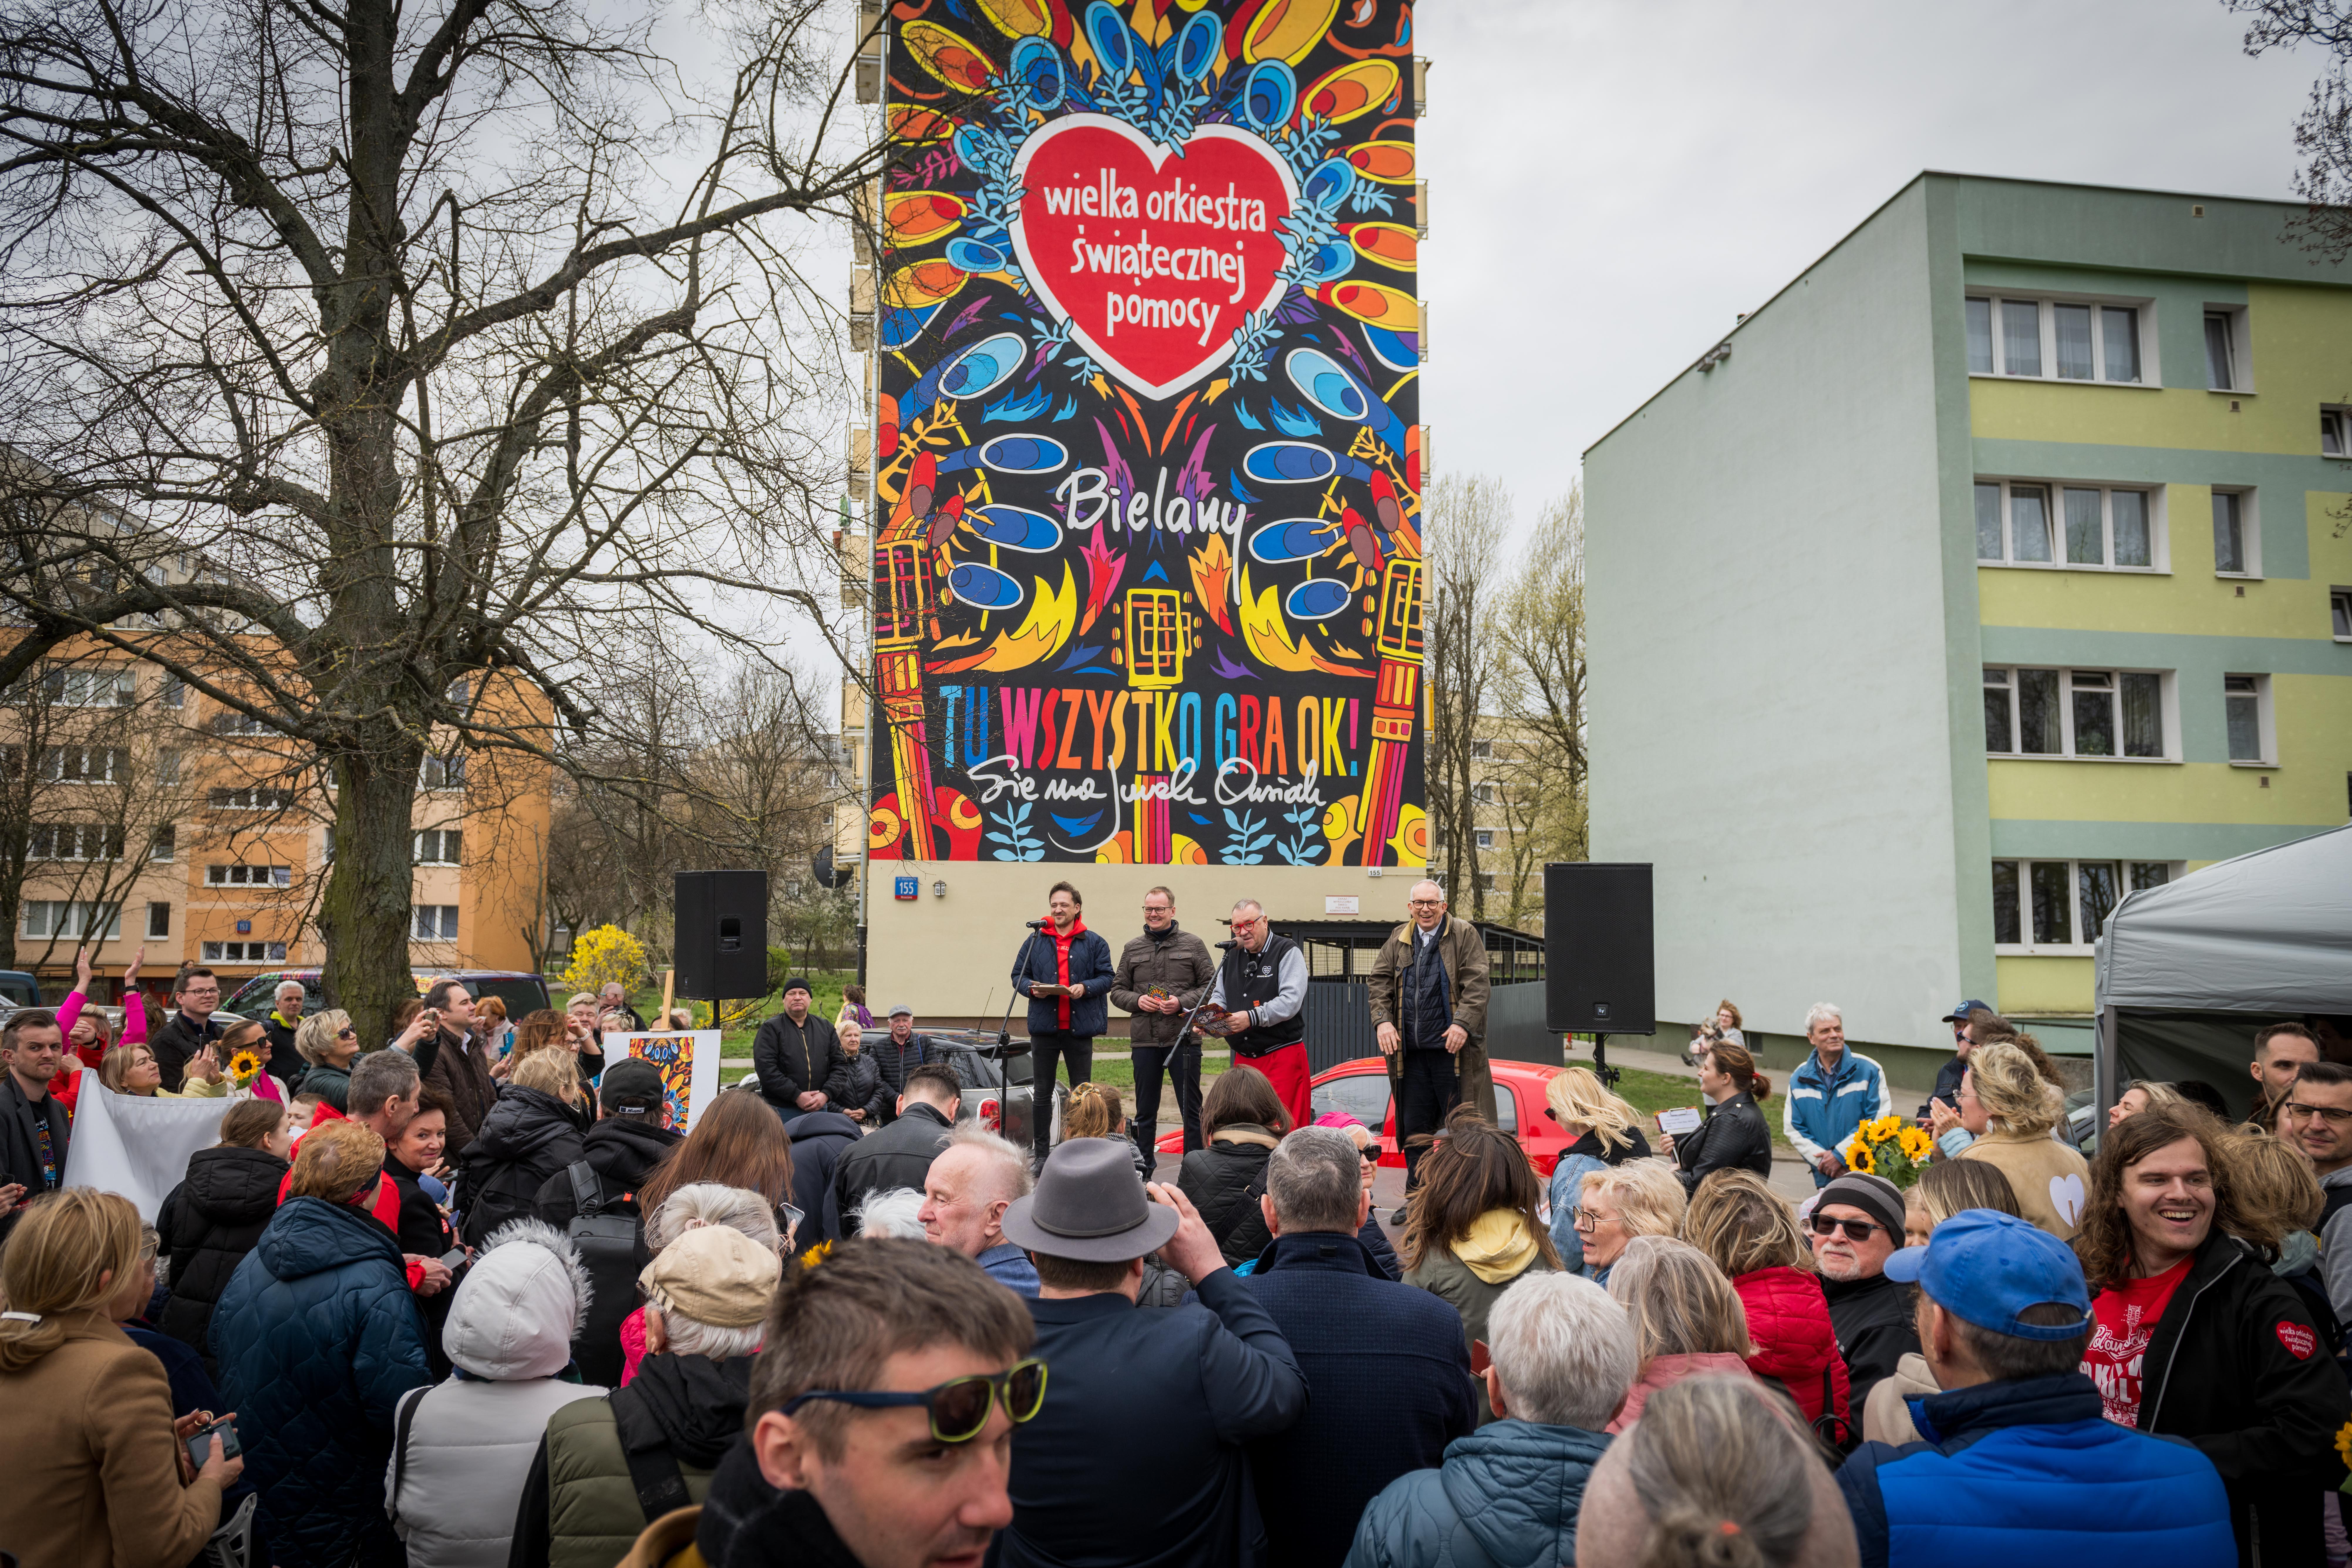 The GOCC mural opening ceremony in Bielany, photo: Łukasz Widziszowski